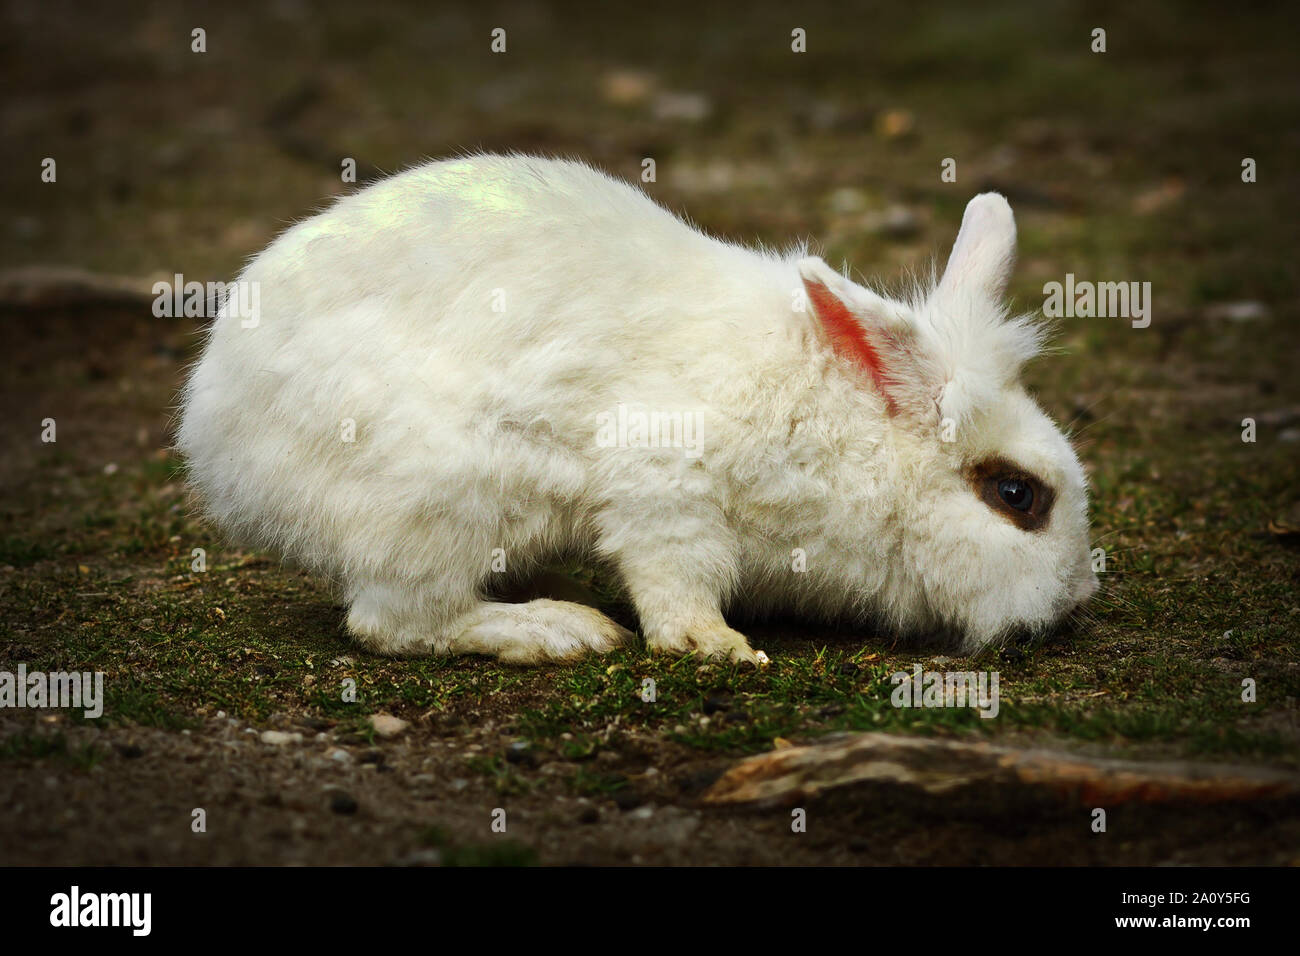 Jeune lapin blanc en quête de nourriture dans la cour de ferme Banque D'Images